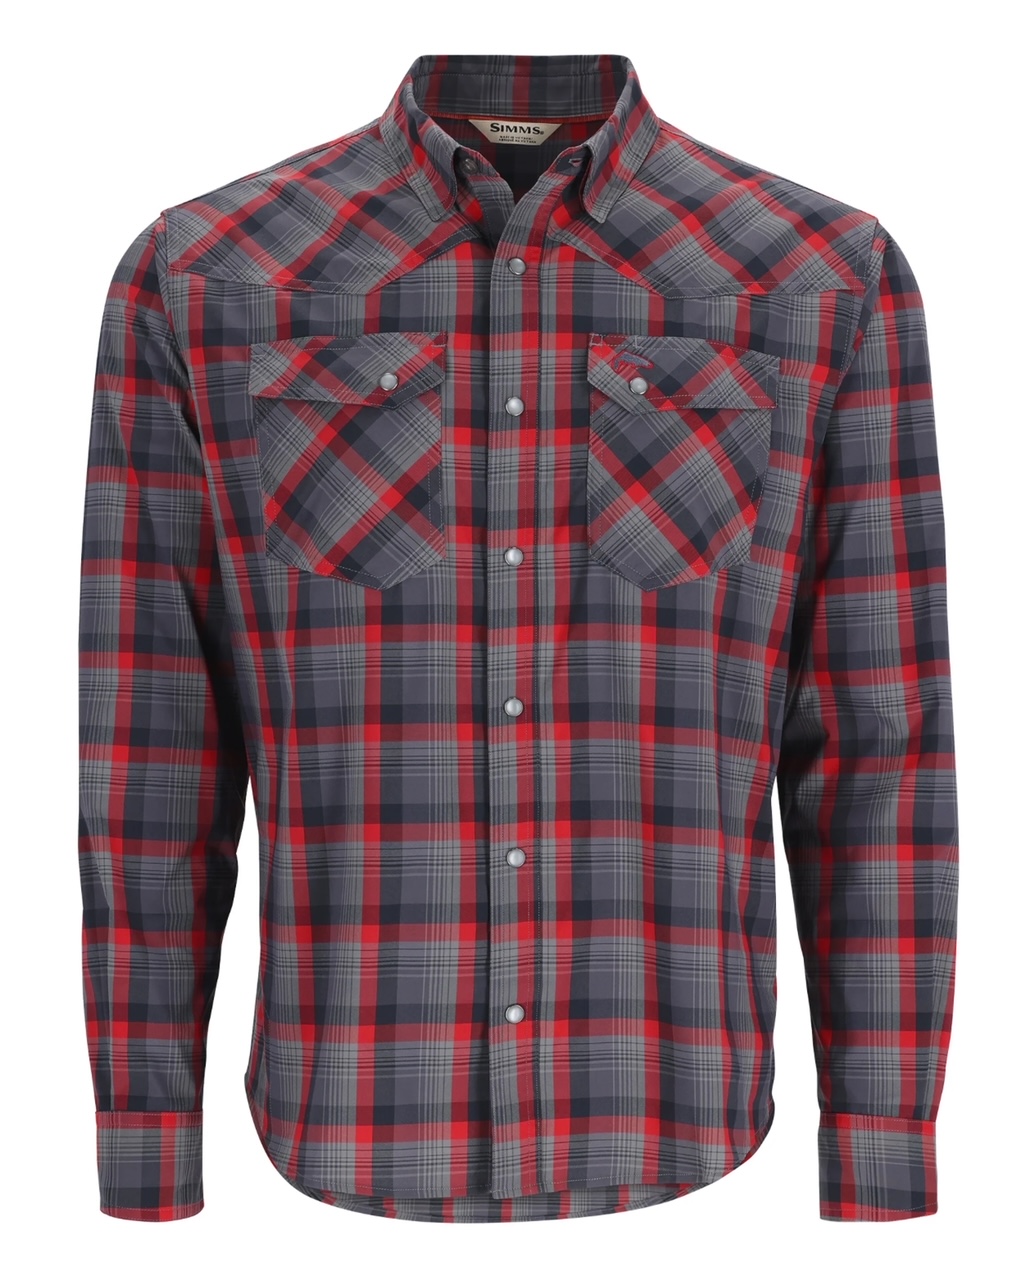 Simms M's Brackett LS Shirt - Auburn Red/Black Window Plaid - XL